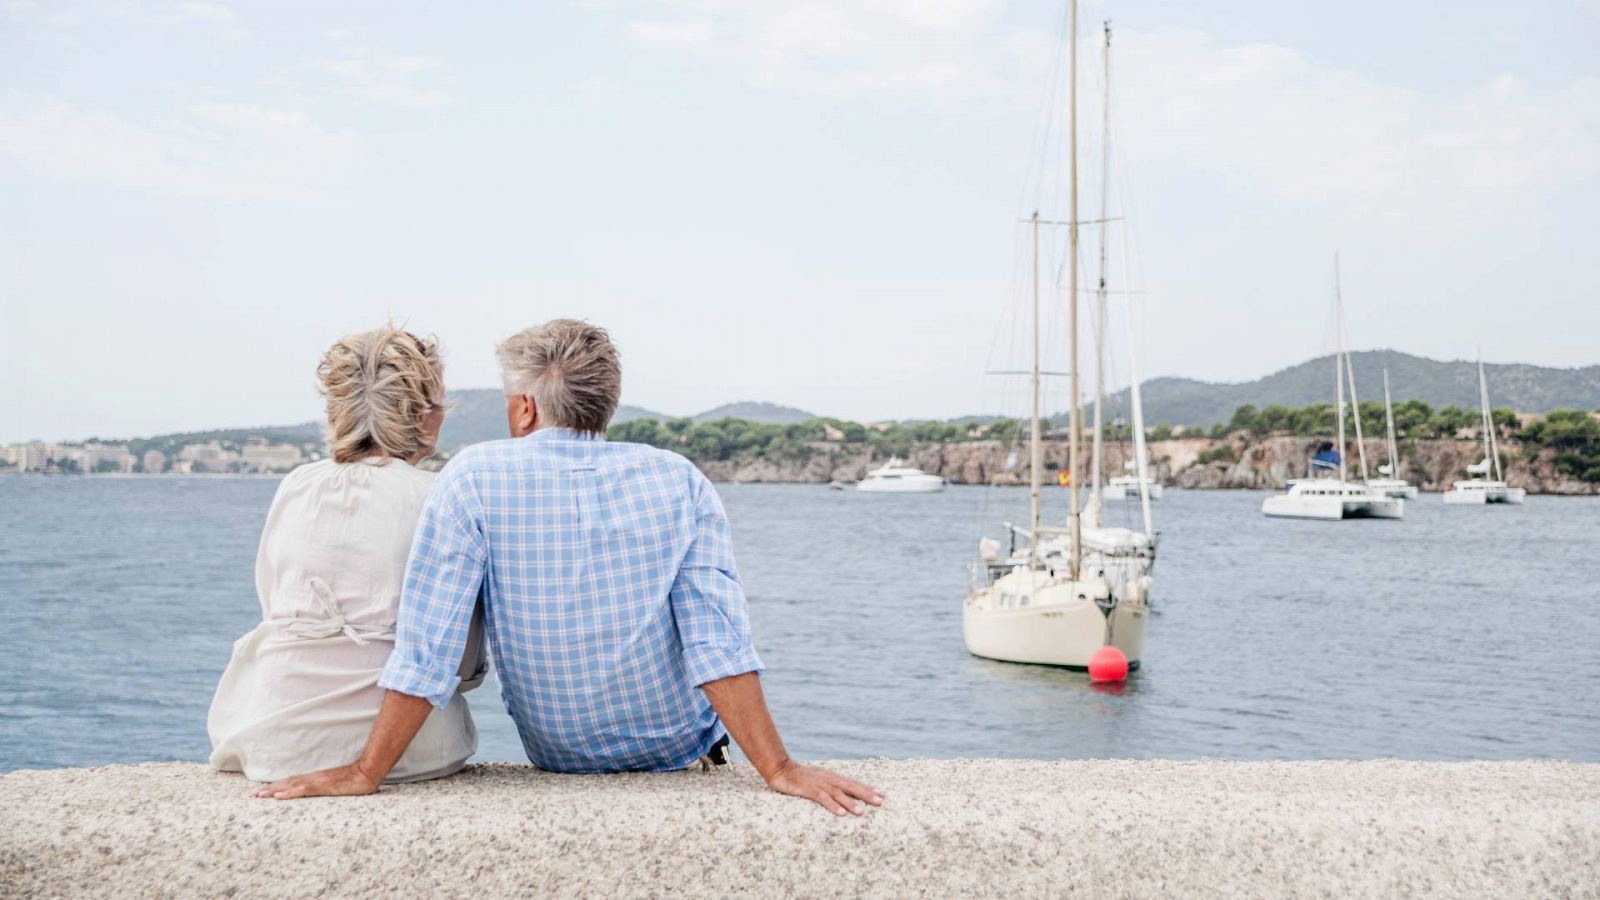 Una pareja disfrutando de unos días de vacaciones junto al mar en España